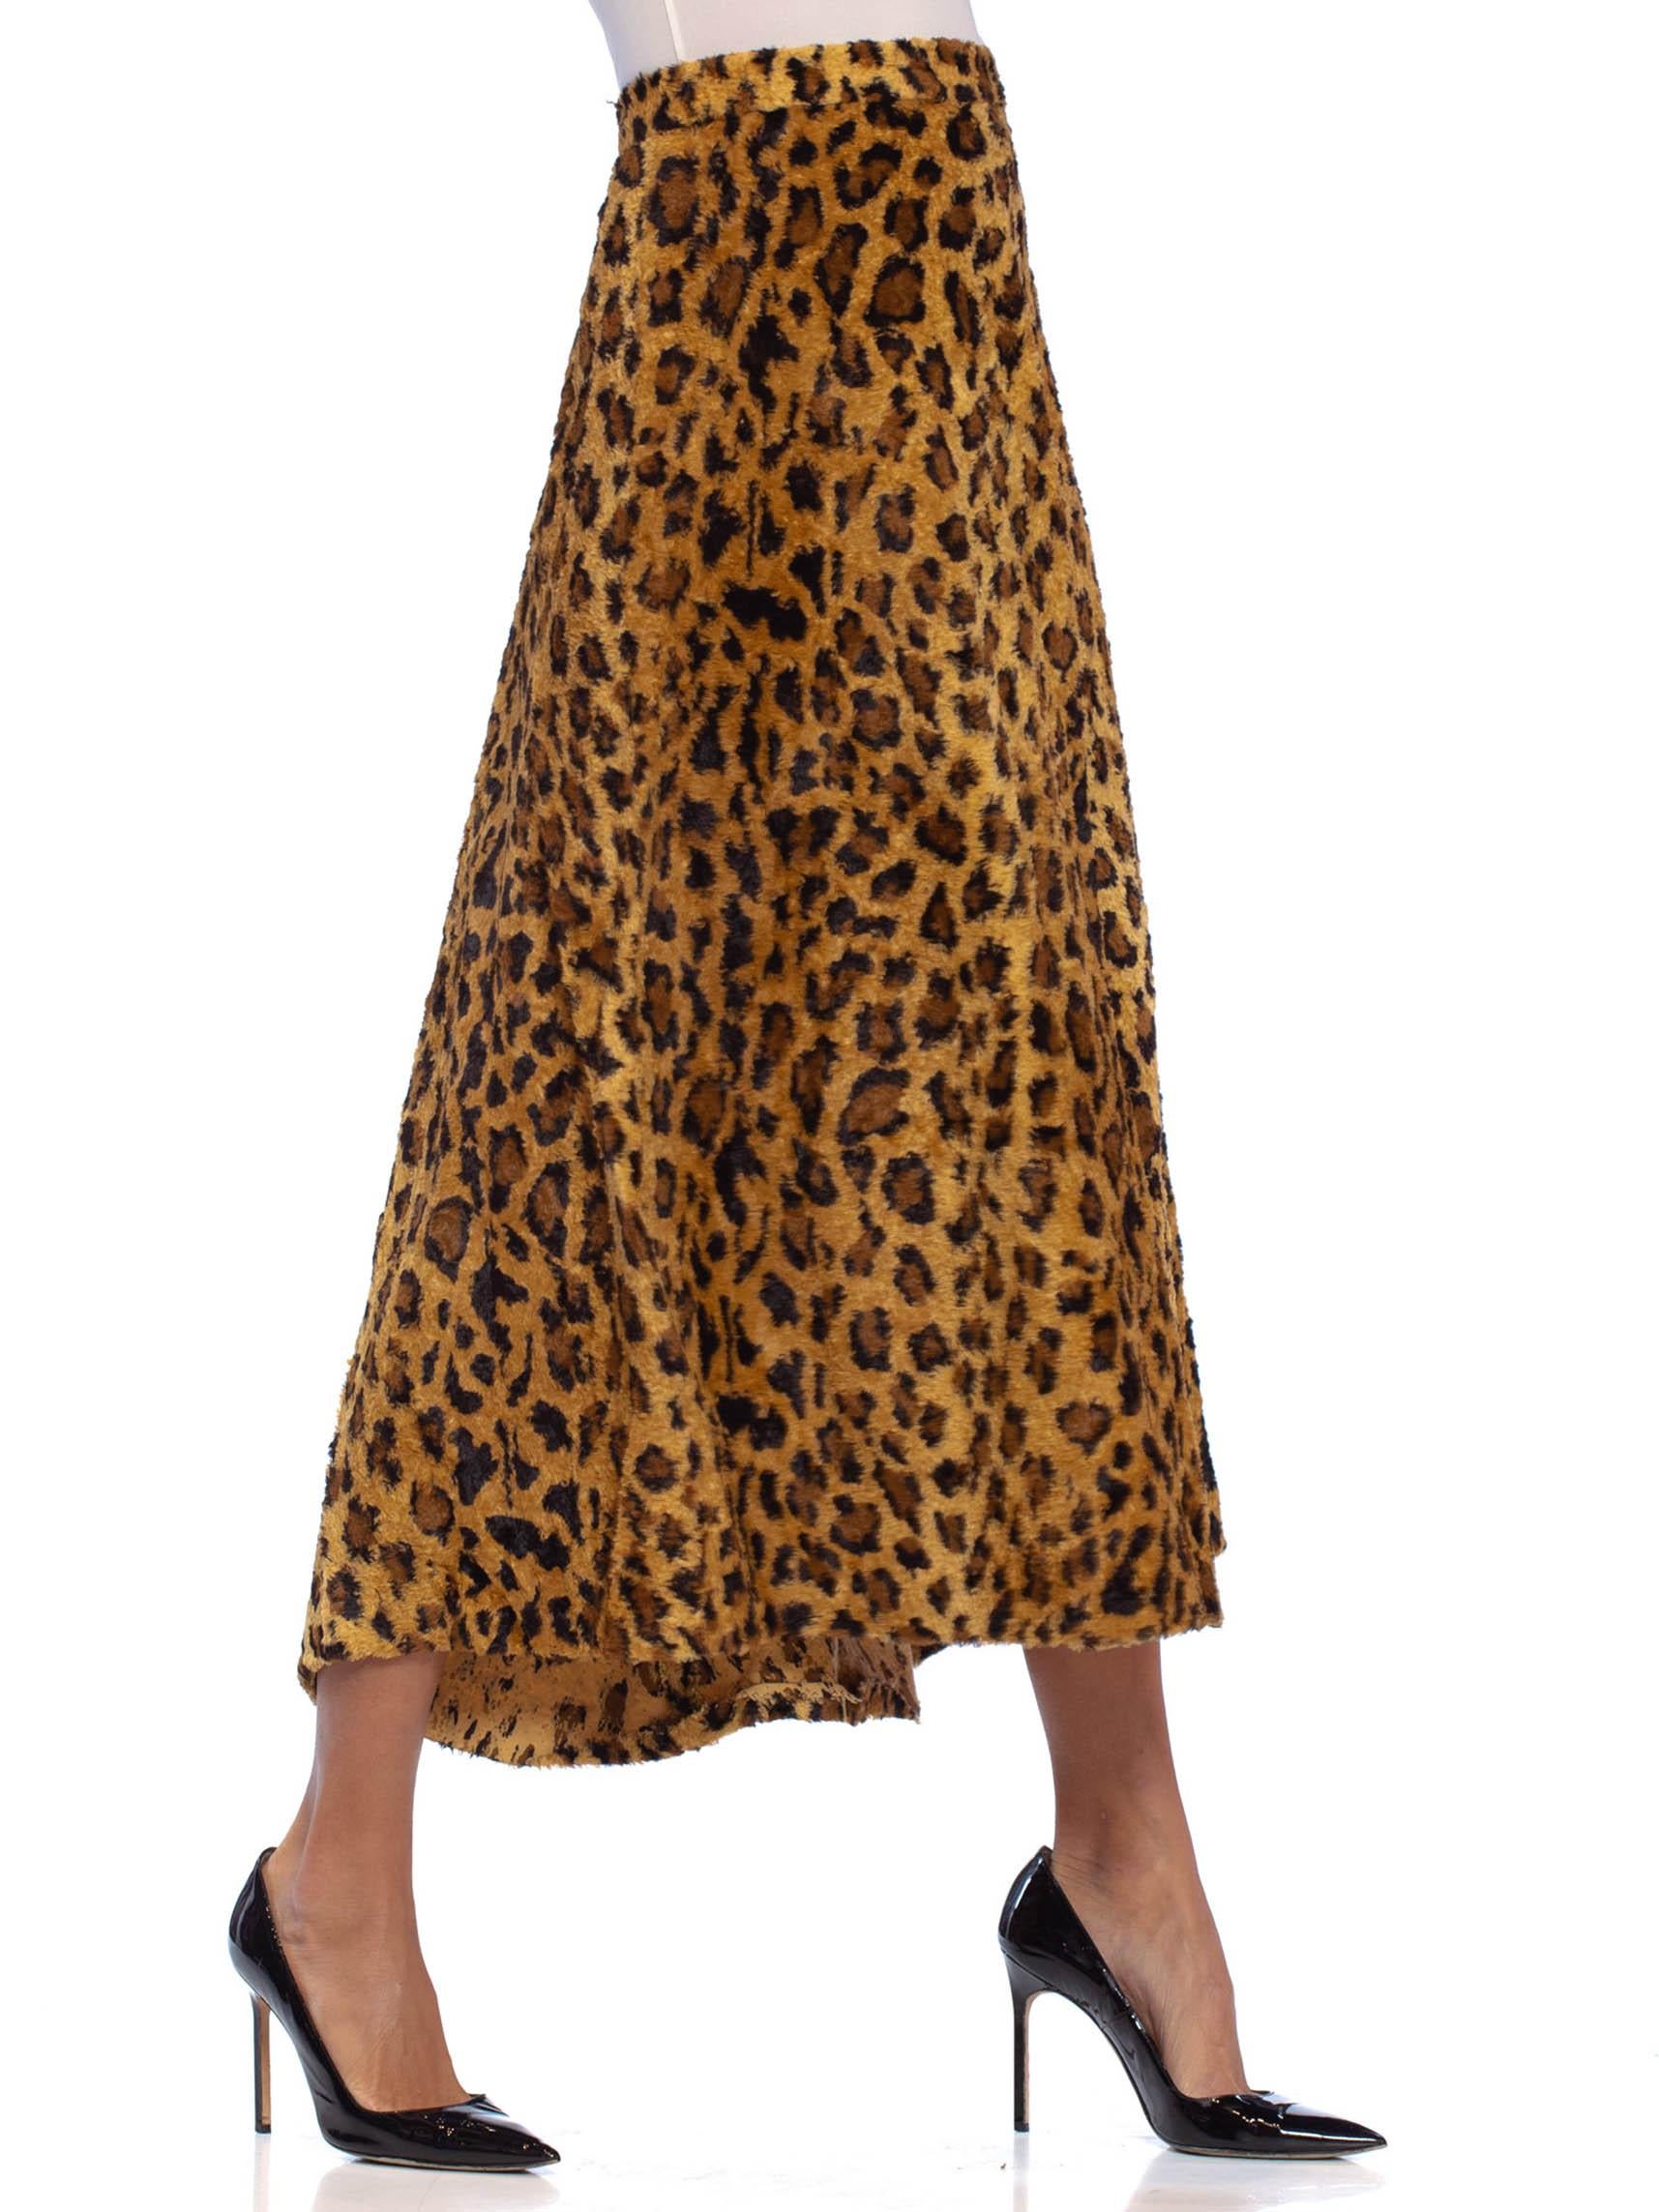 Women's 1940S Leopard Print Cotton & Rayon Faux Fur Early Rockabilly Skirt